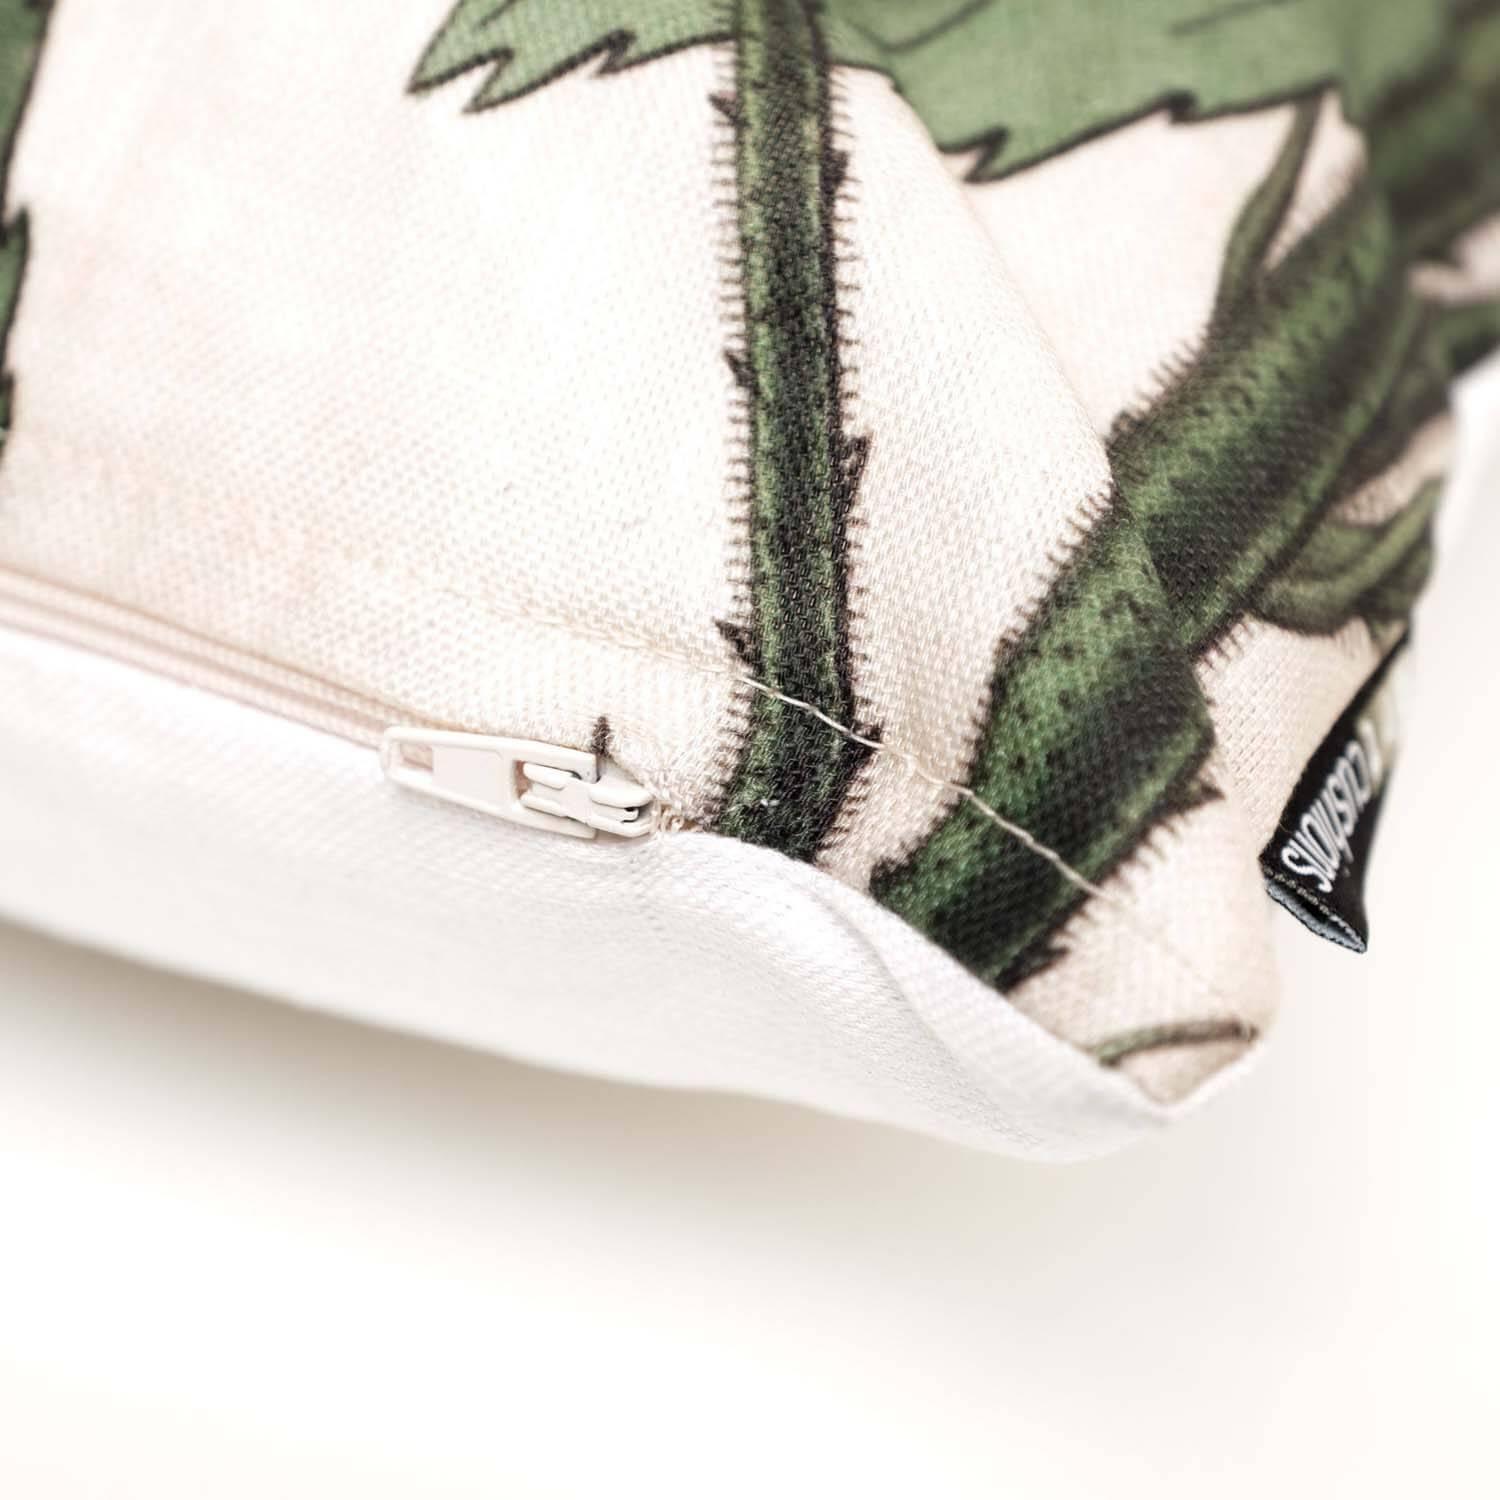 Pineapple Dark - Art Print Cushion - Handmade Cushions UK - WeLoveCushions